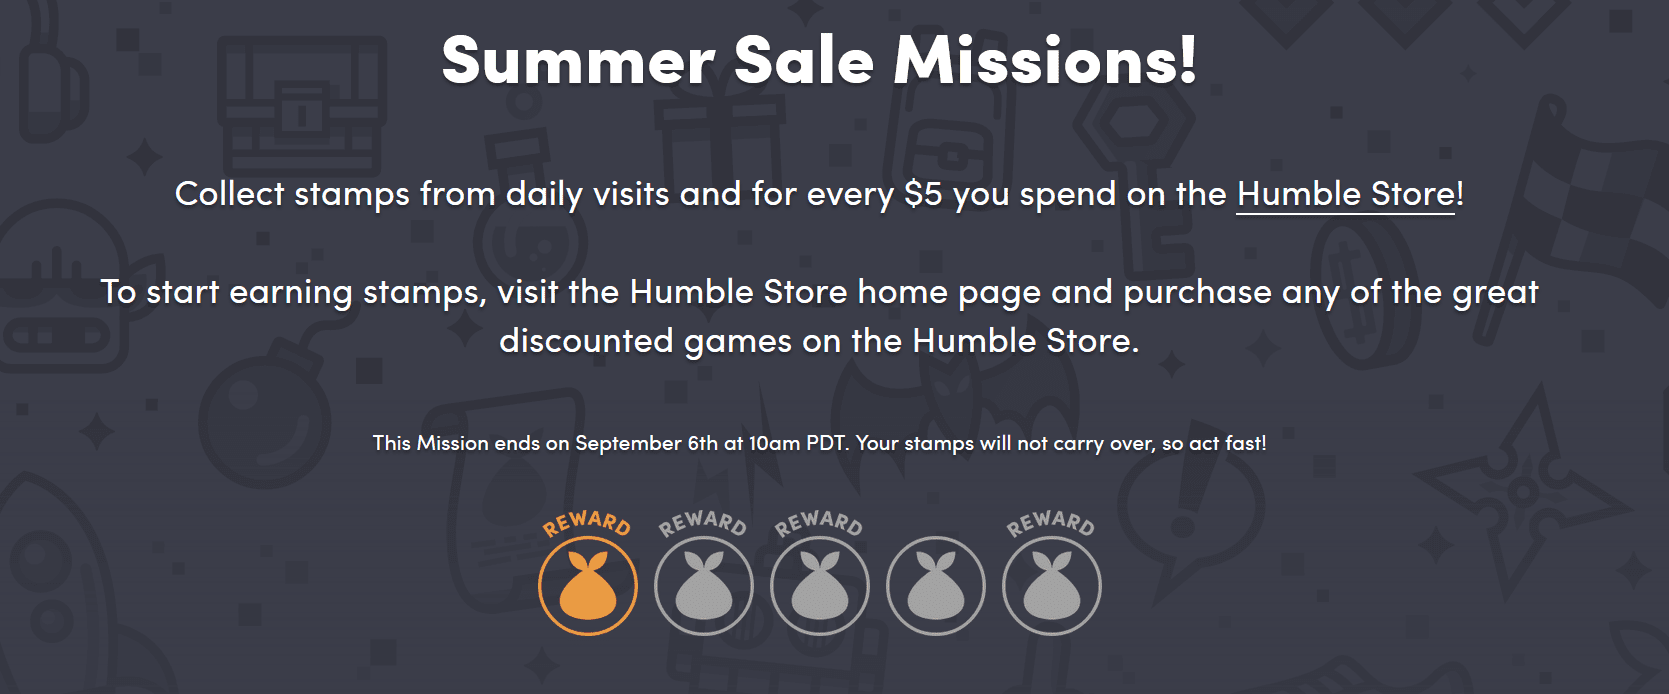 Humble Bundle’s Summer Sale Mission